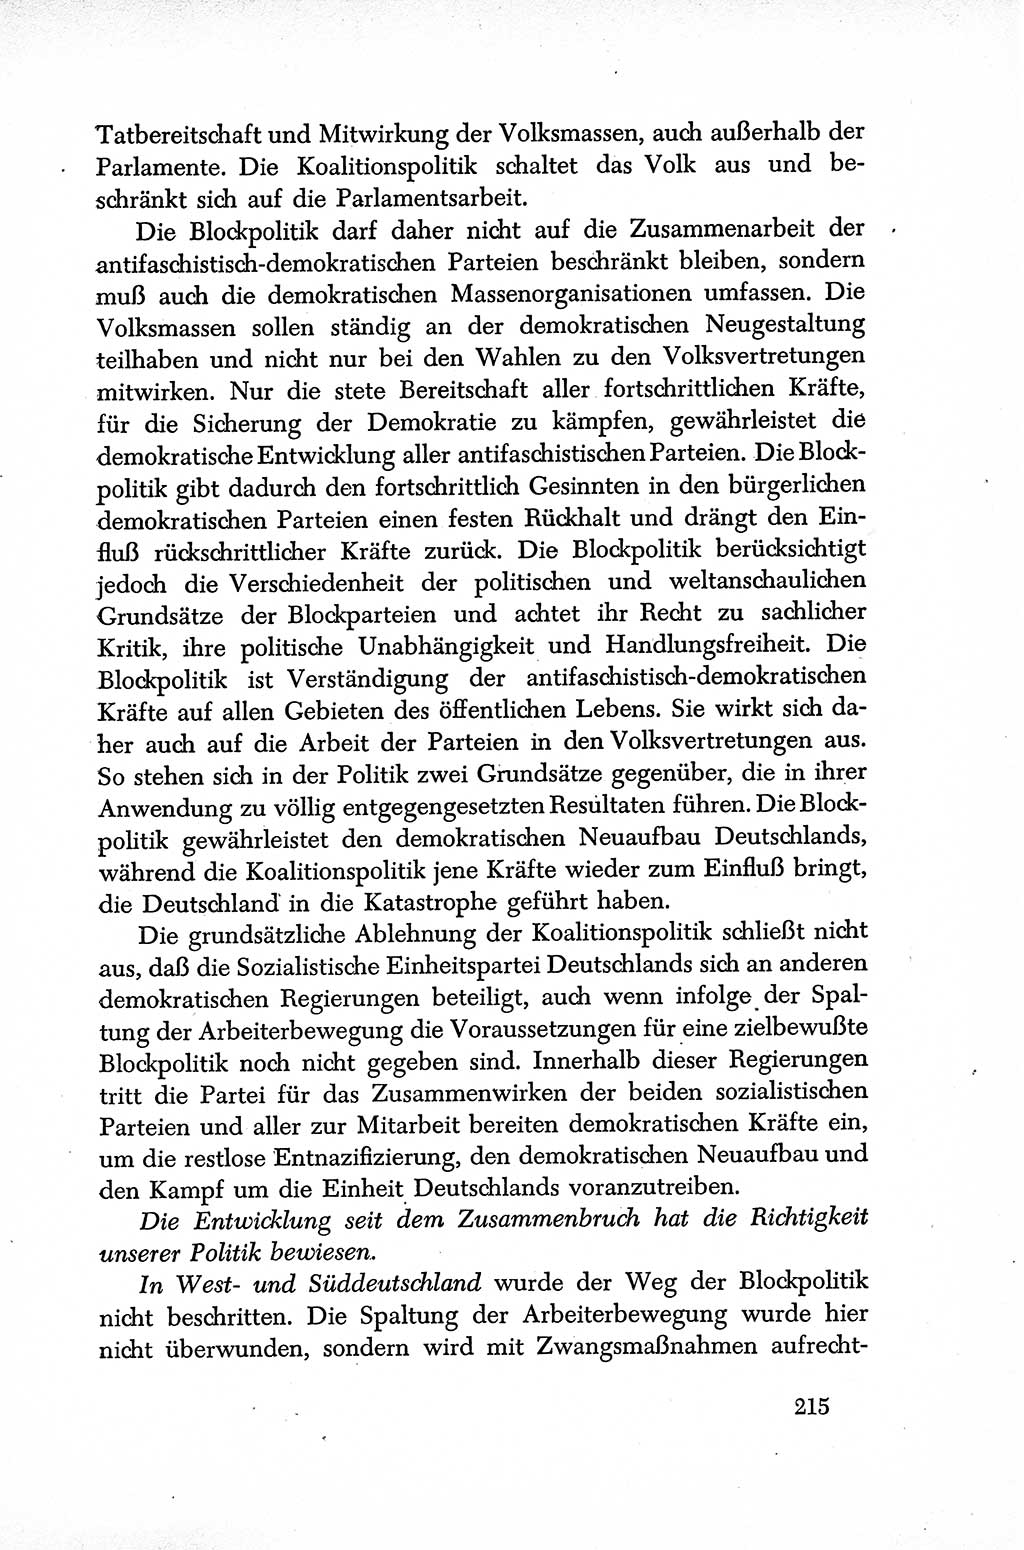 Dokumente der Sozialistischen Einheitspartei Deutschlands (SED) [Sowjetische Besatzungszone (SBZ) Deutschlands] 1946-1948, Seite 215 (Dok. SED SBZ Dtl. 1946-1948, S. 215)